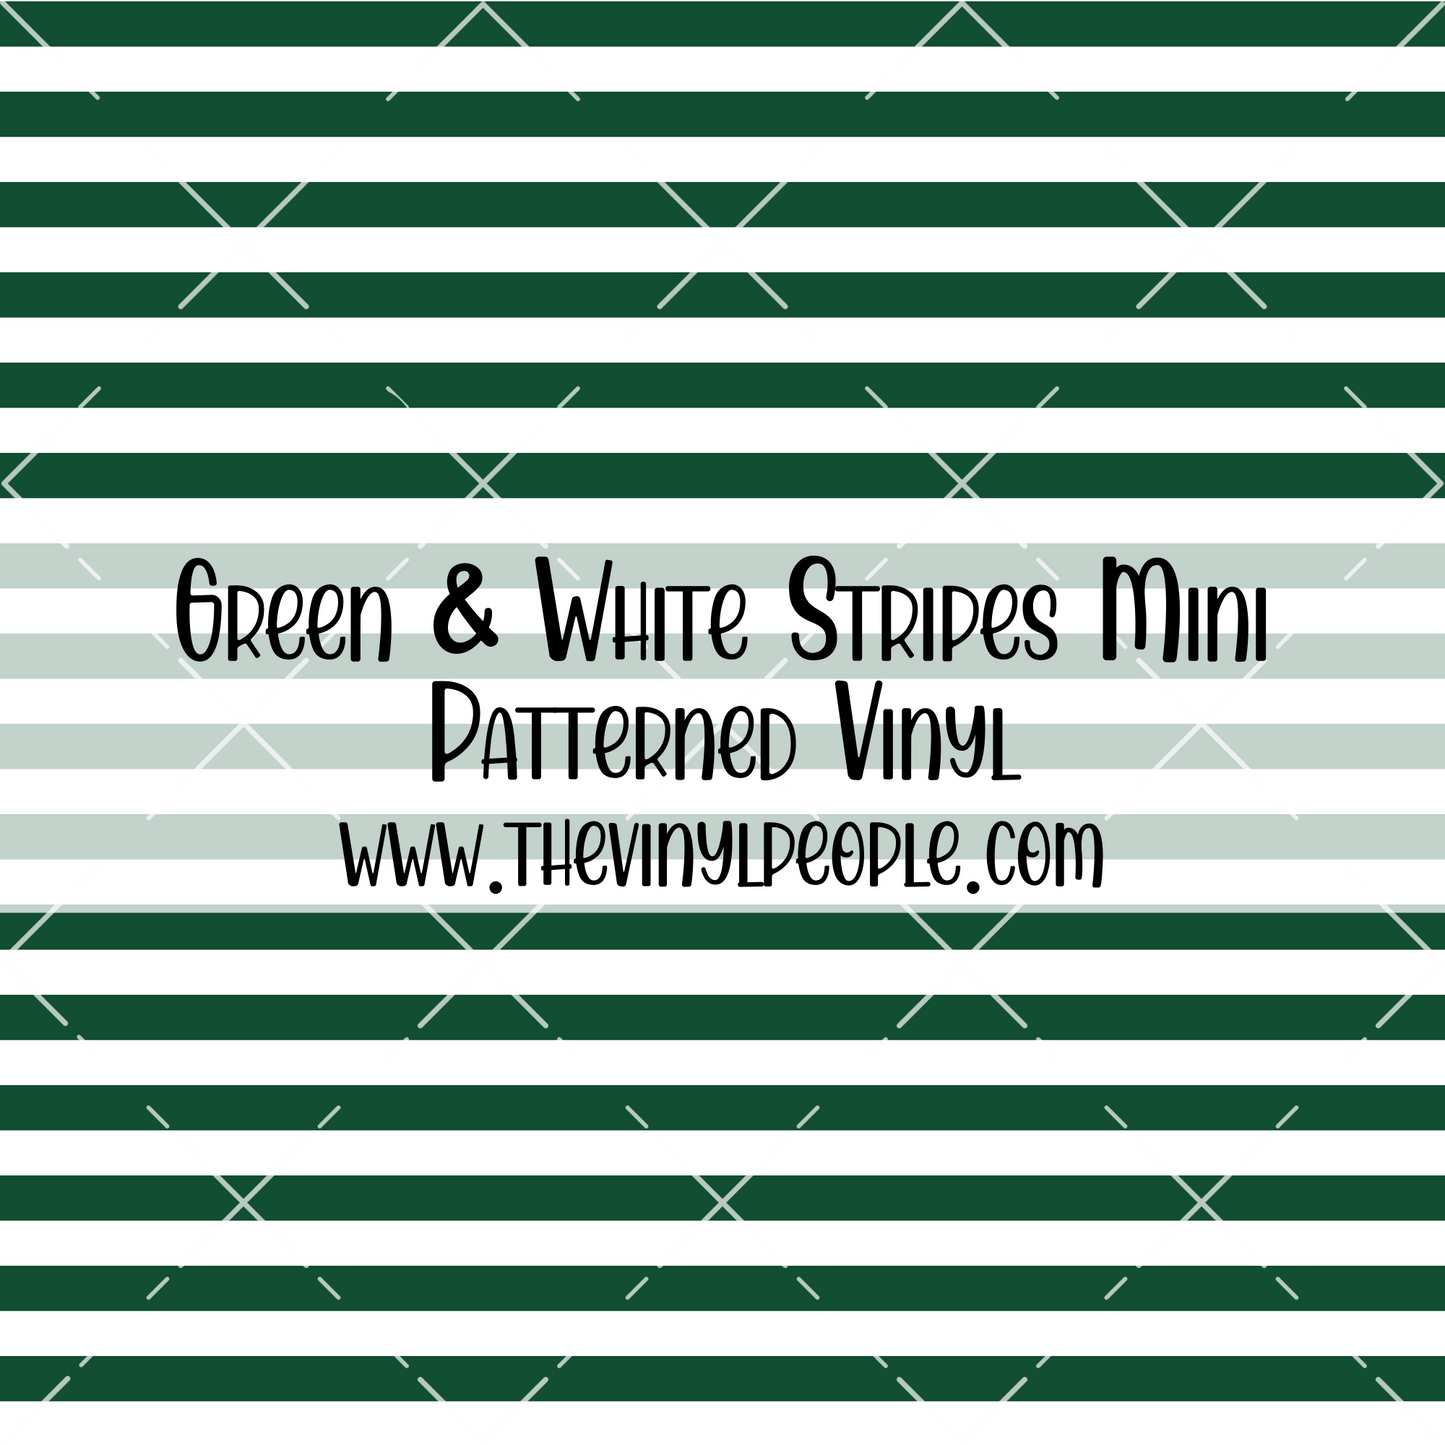 Green & White Stripes Patterned Vinyl